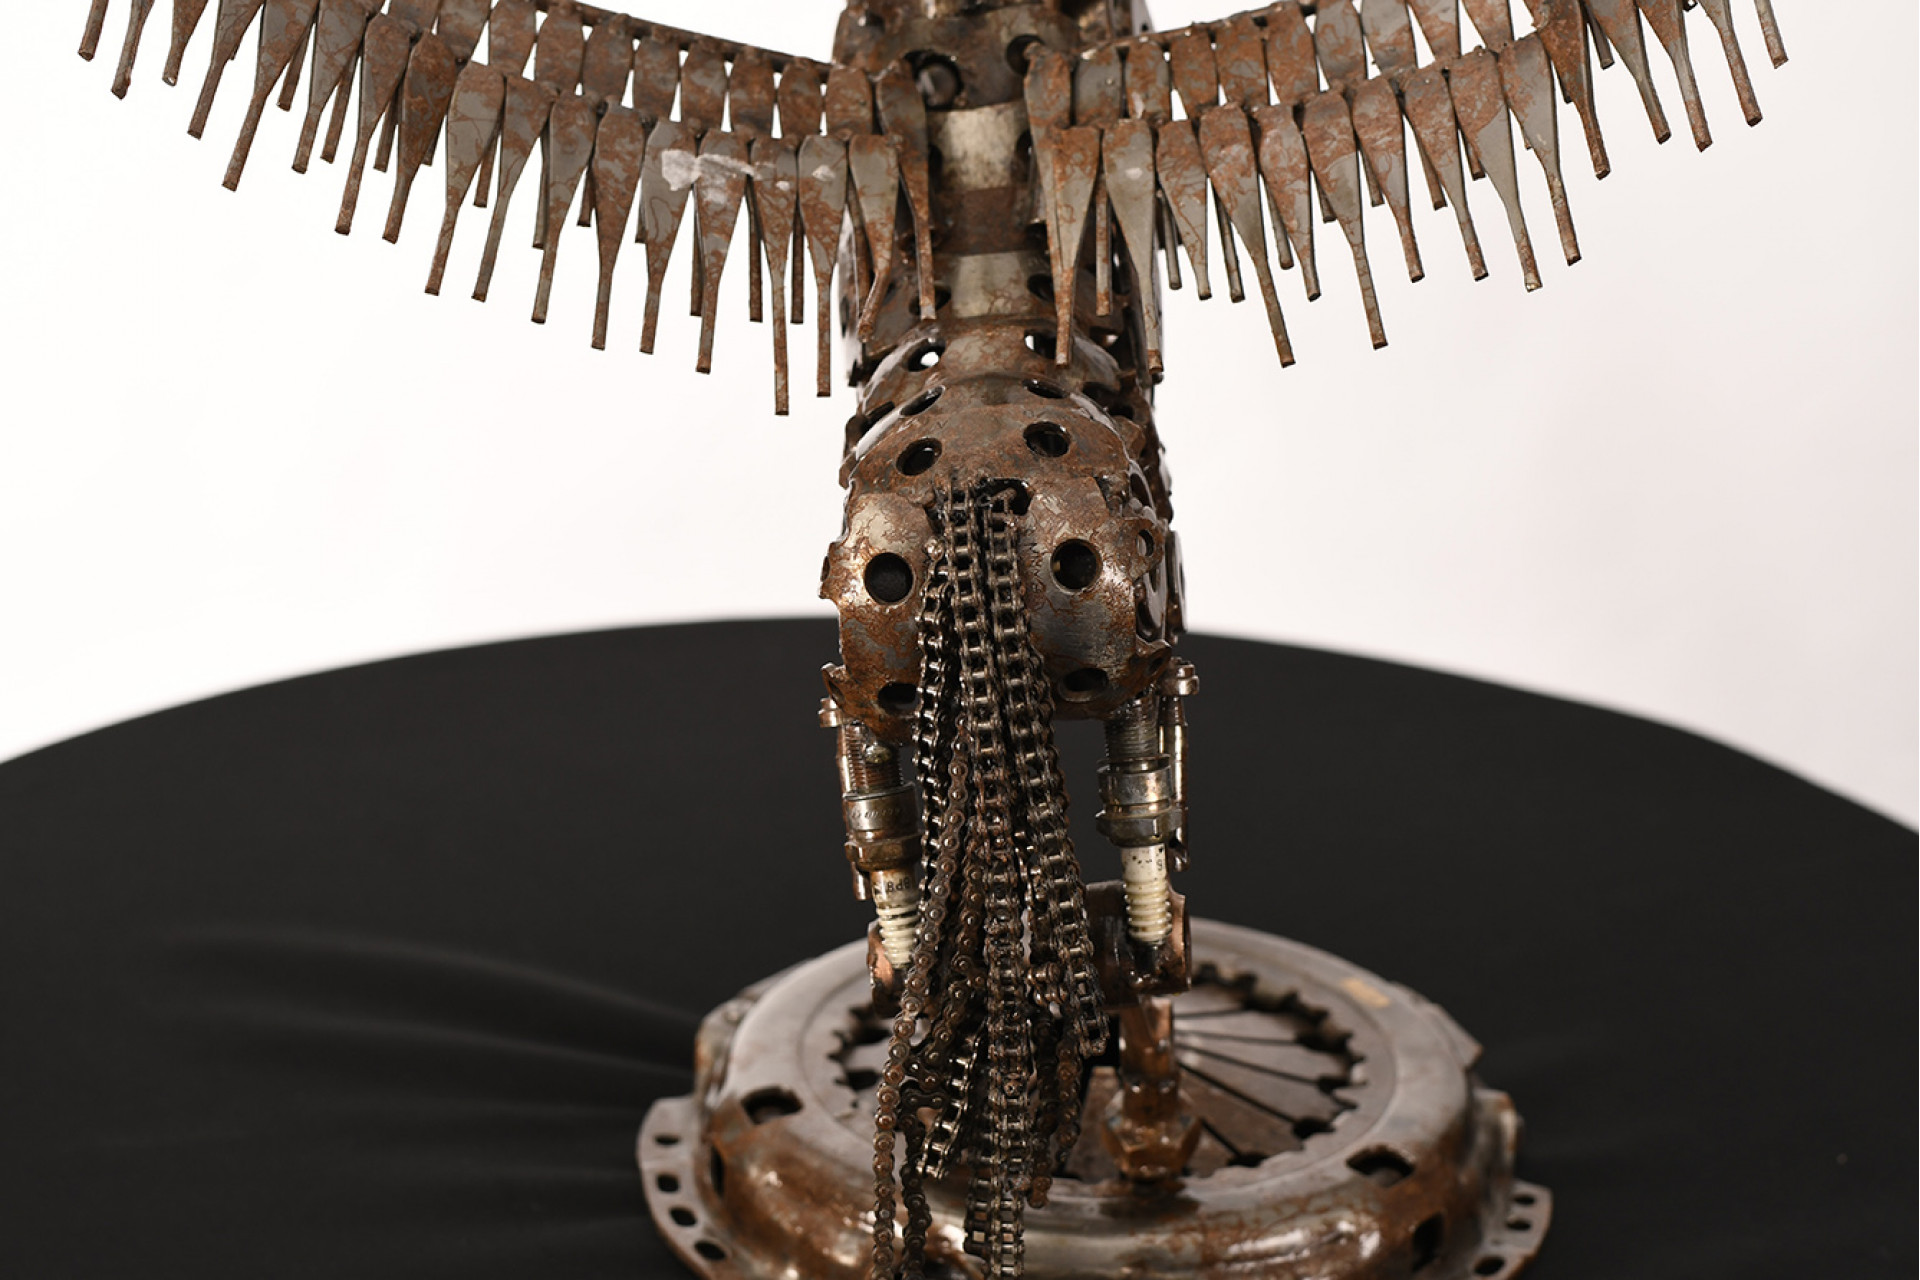 Hand Made Pegasus Metal Sculpture